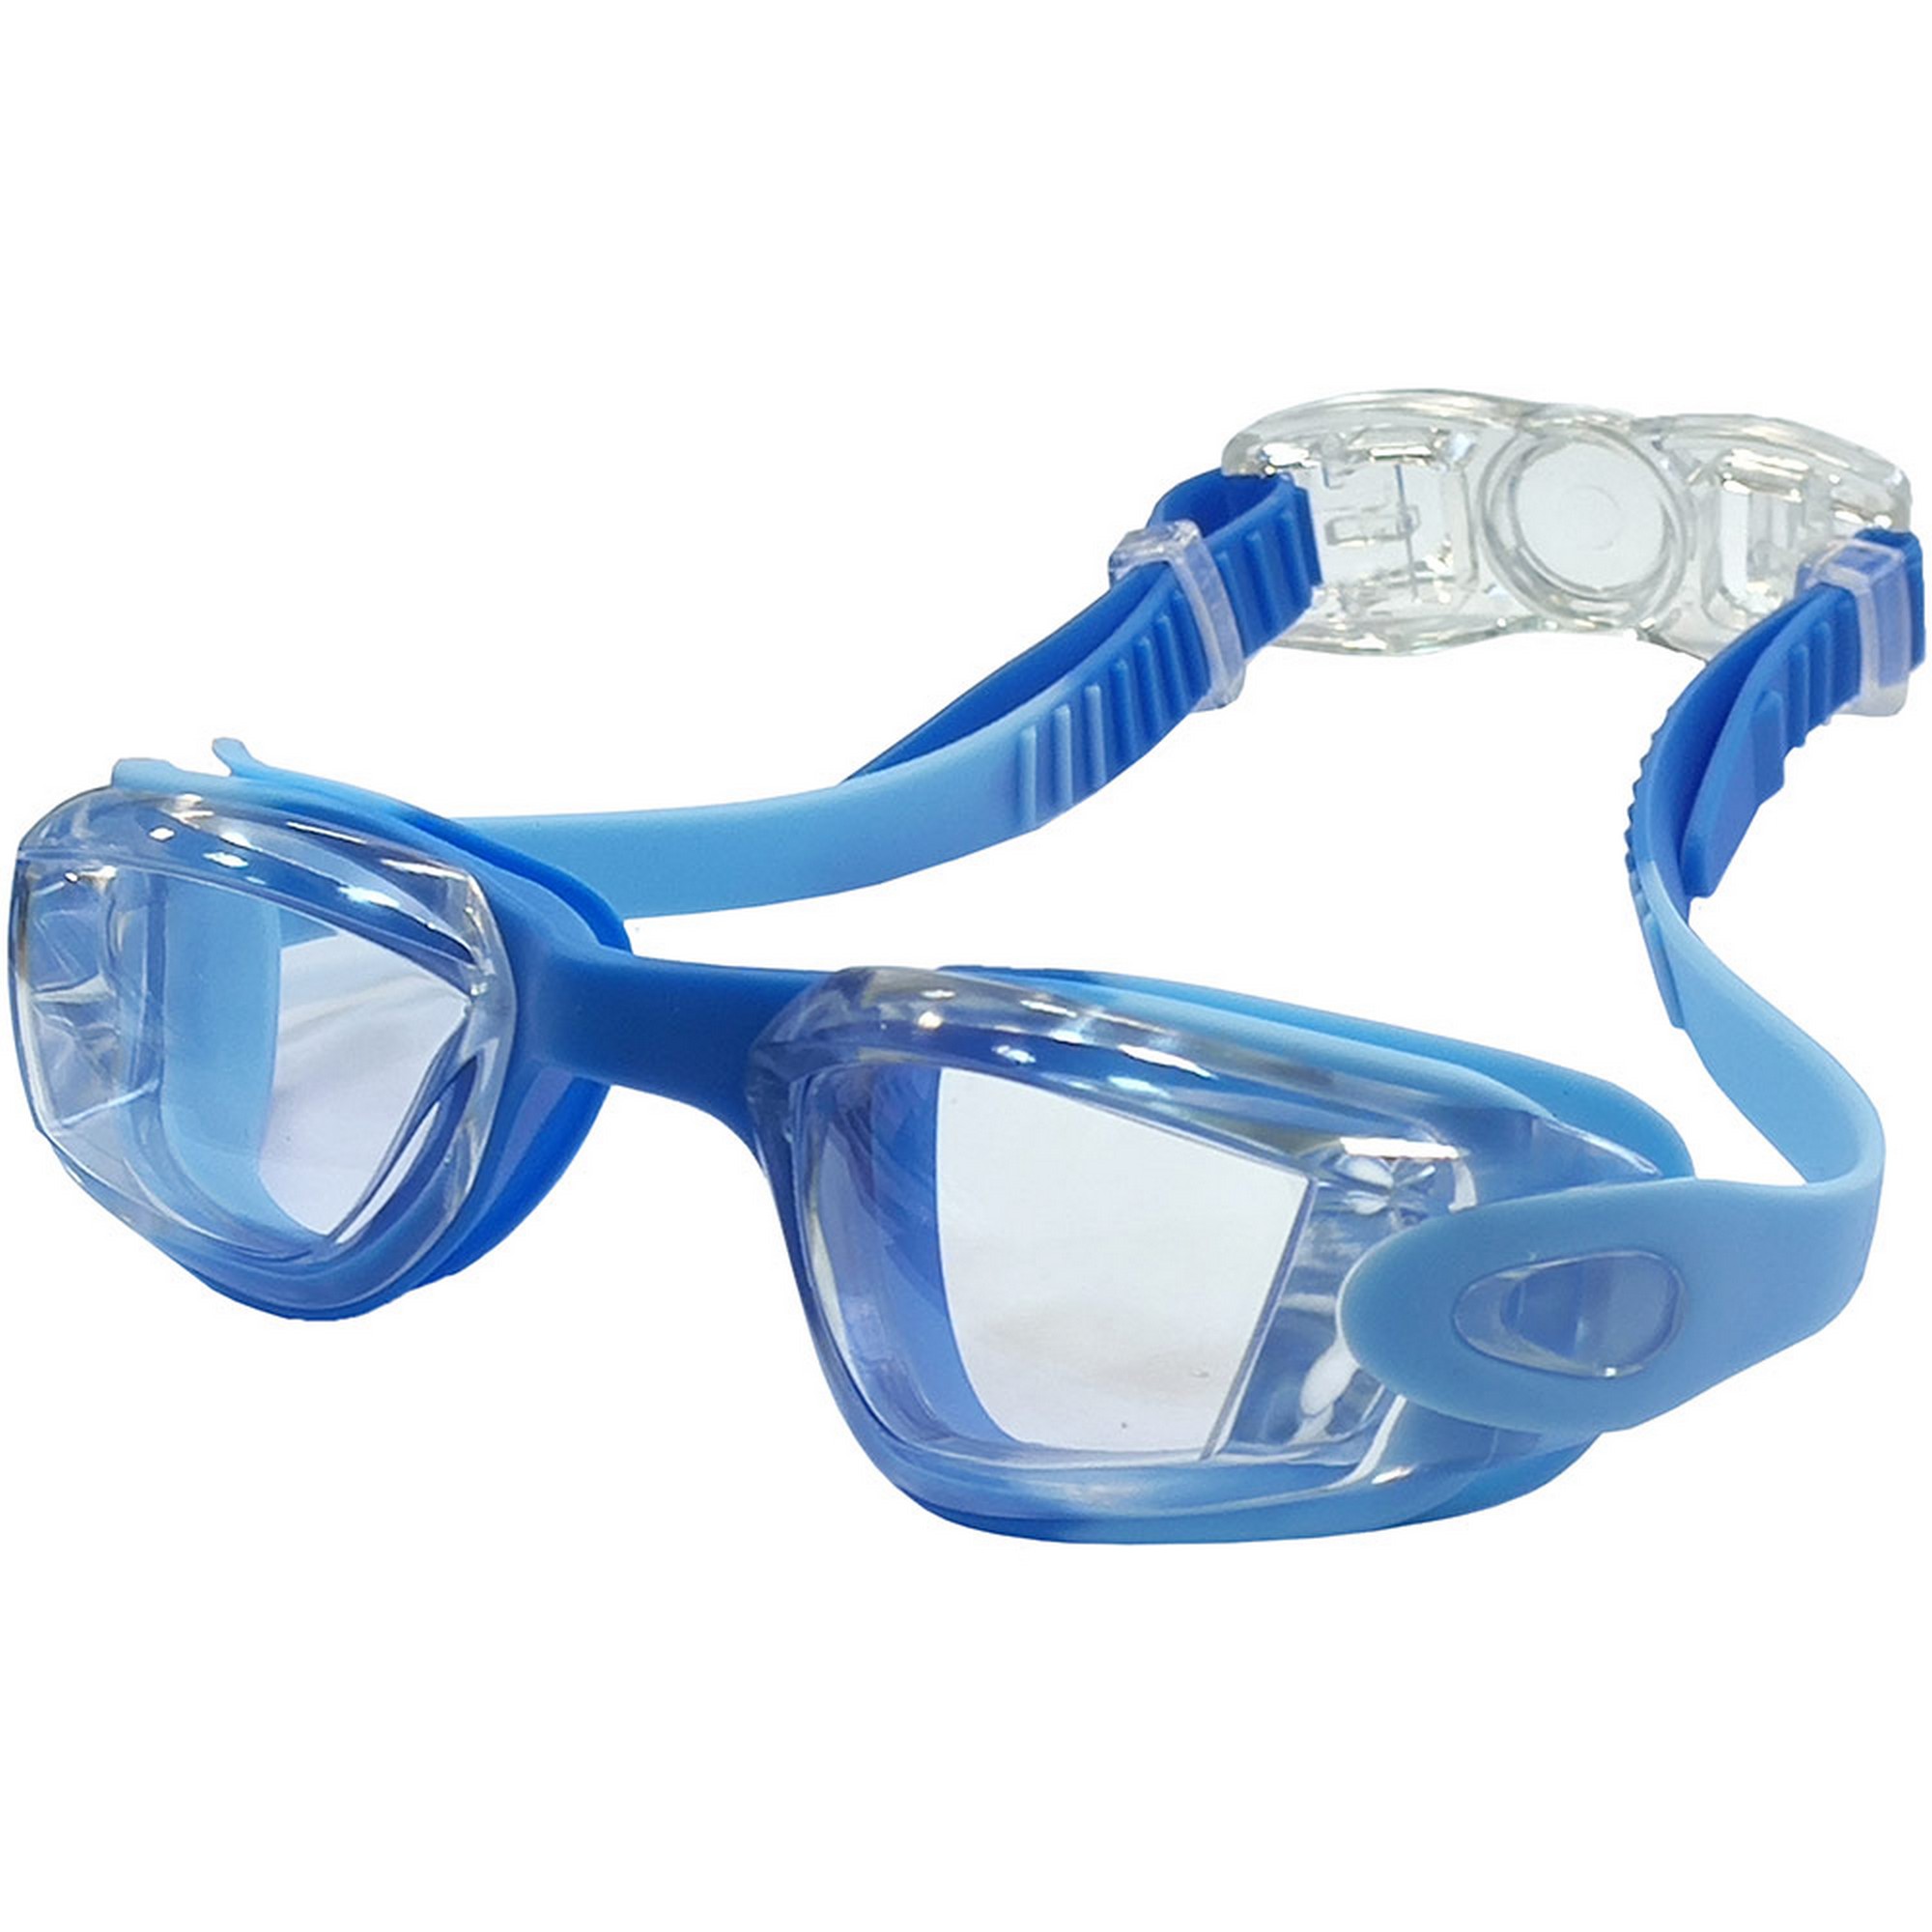 Купить Очки для плавания детские Sportex E39684 мультиколор сине-голубой,